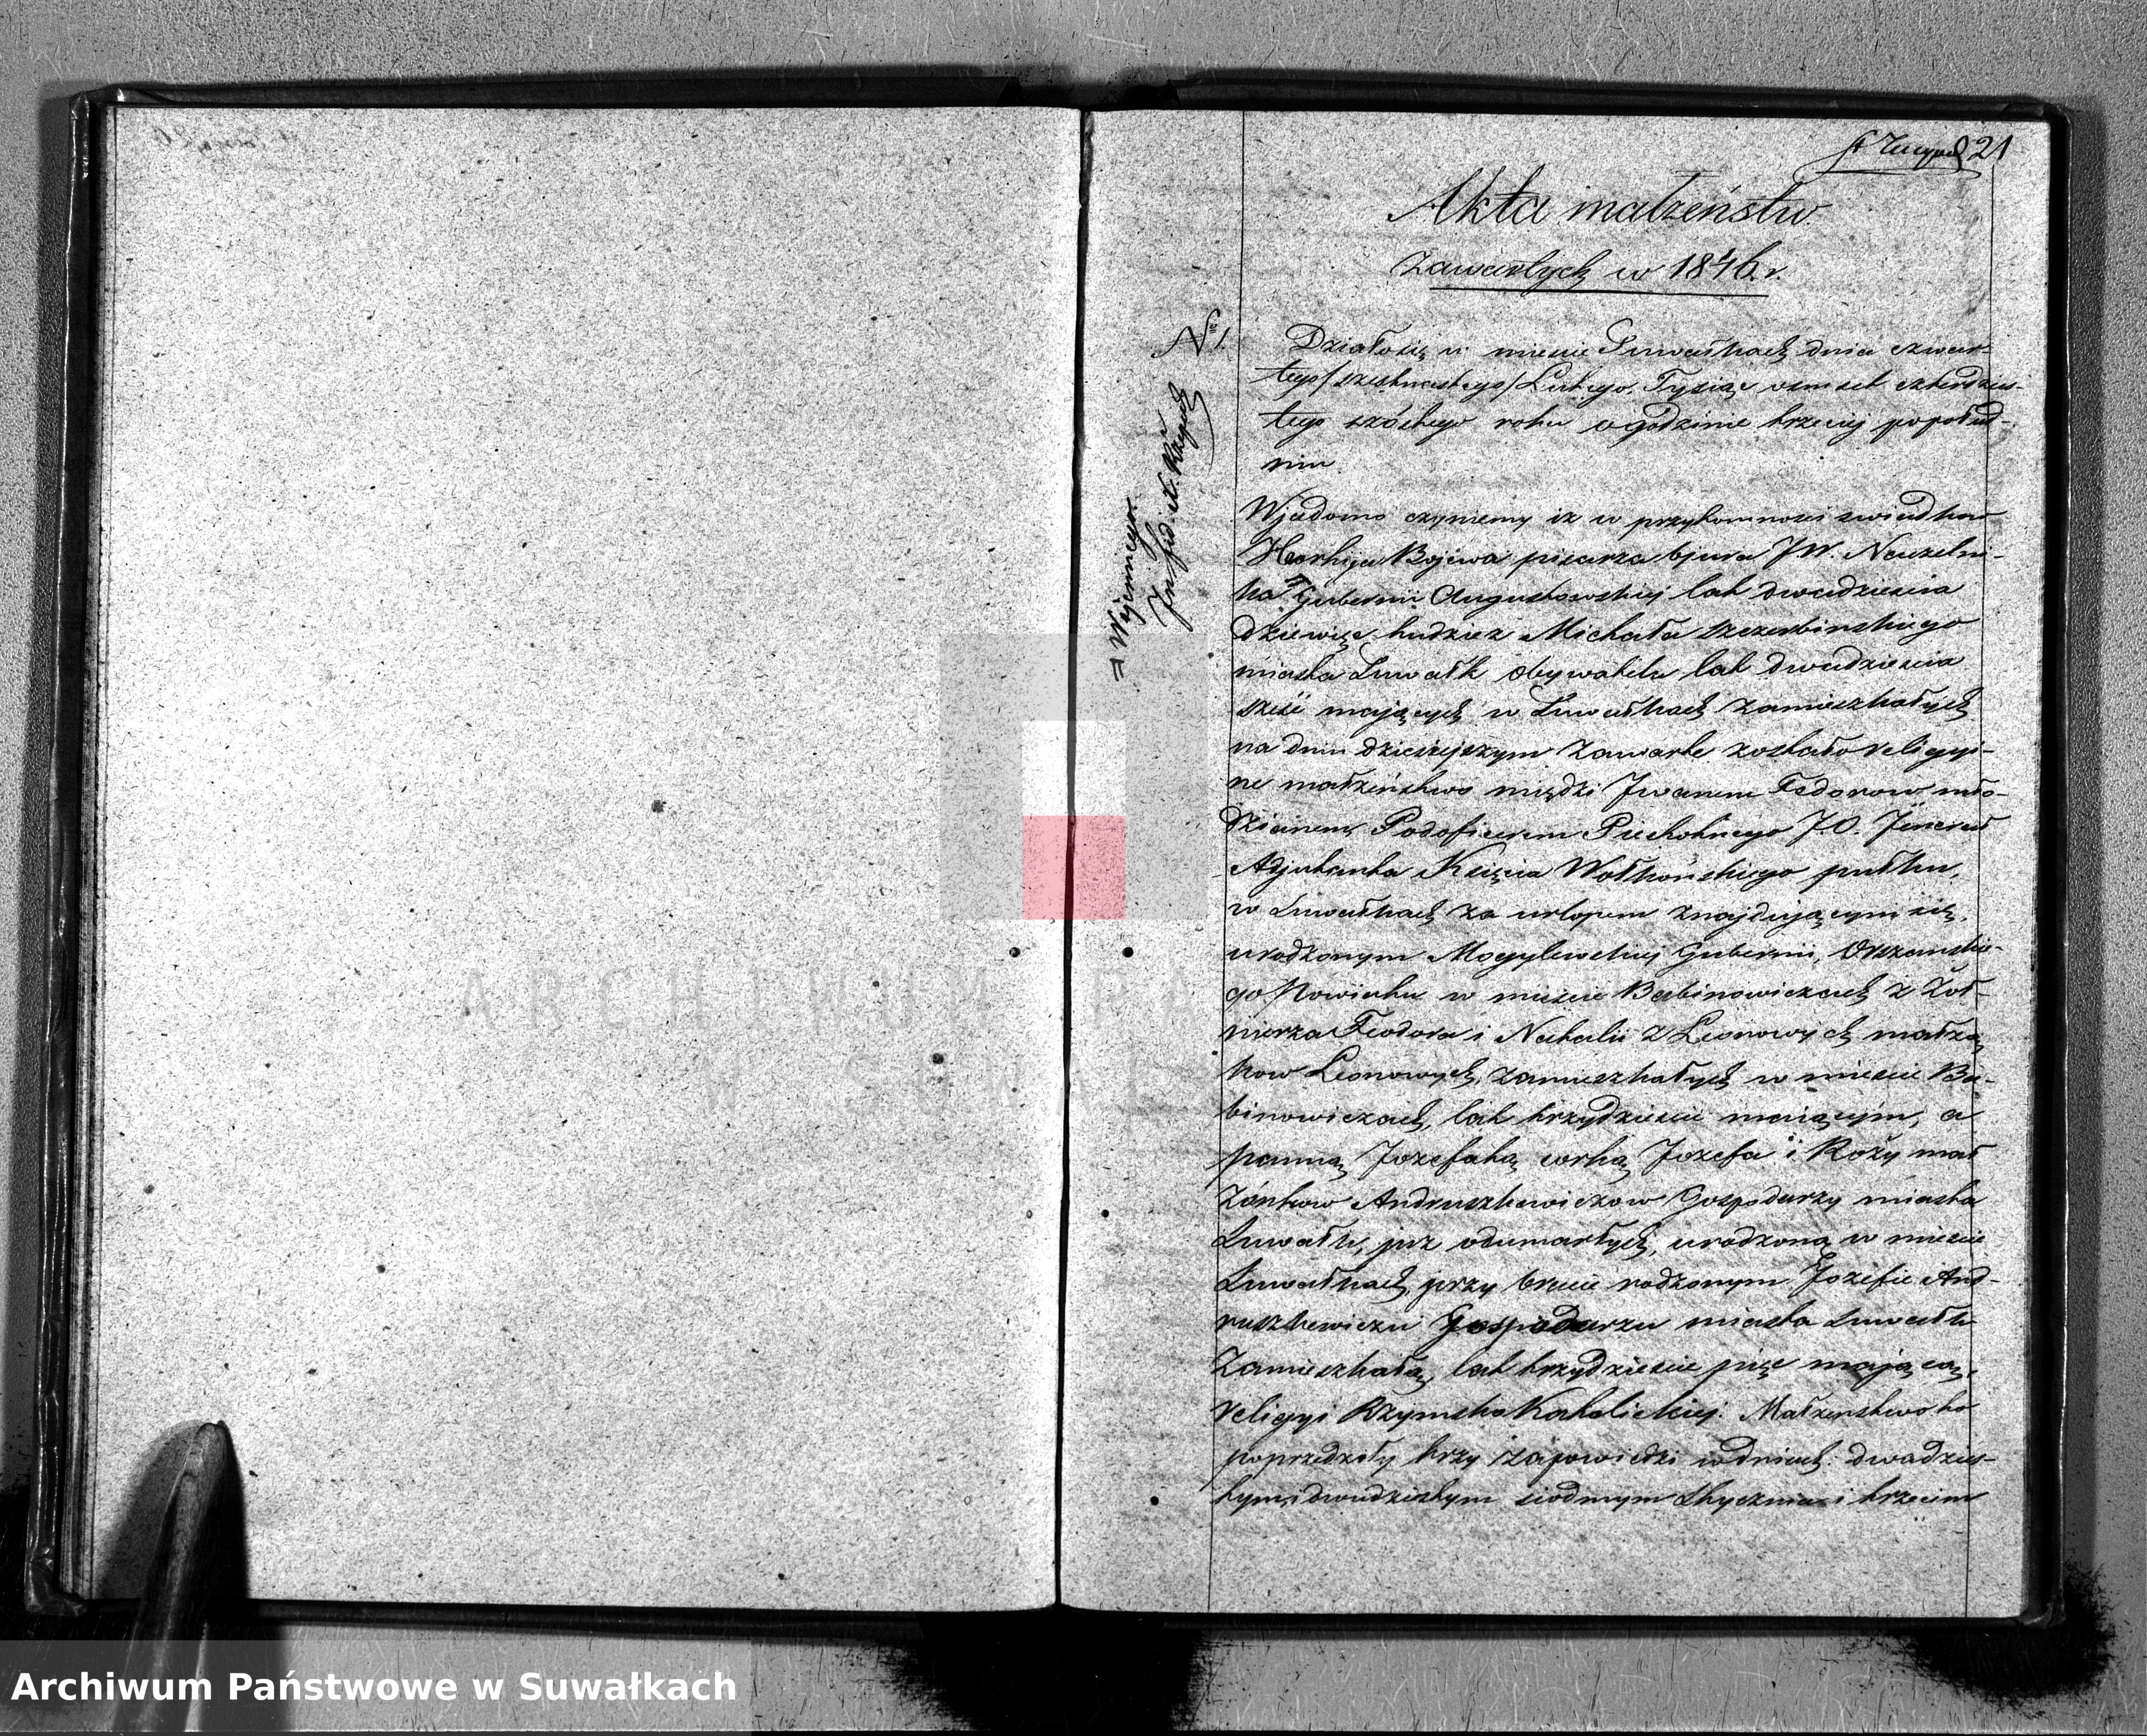 Skan z jednostki: Duplikat Aktów Stanu Cywilnego Suwalskiej Prawosławnej Cerkwi za 1846 r.